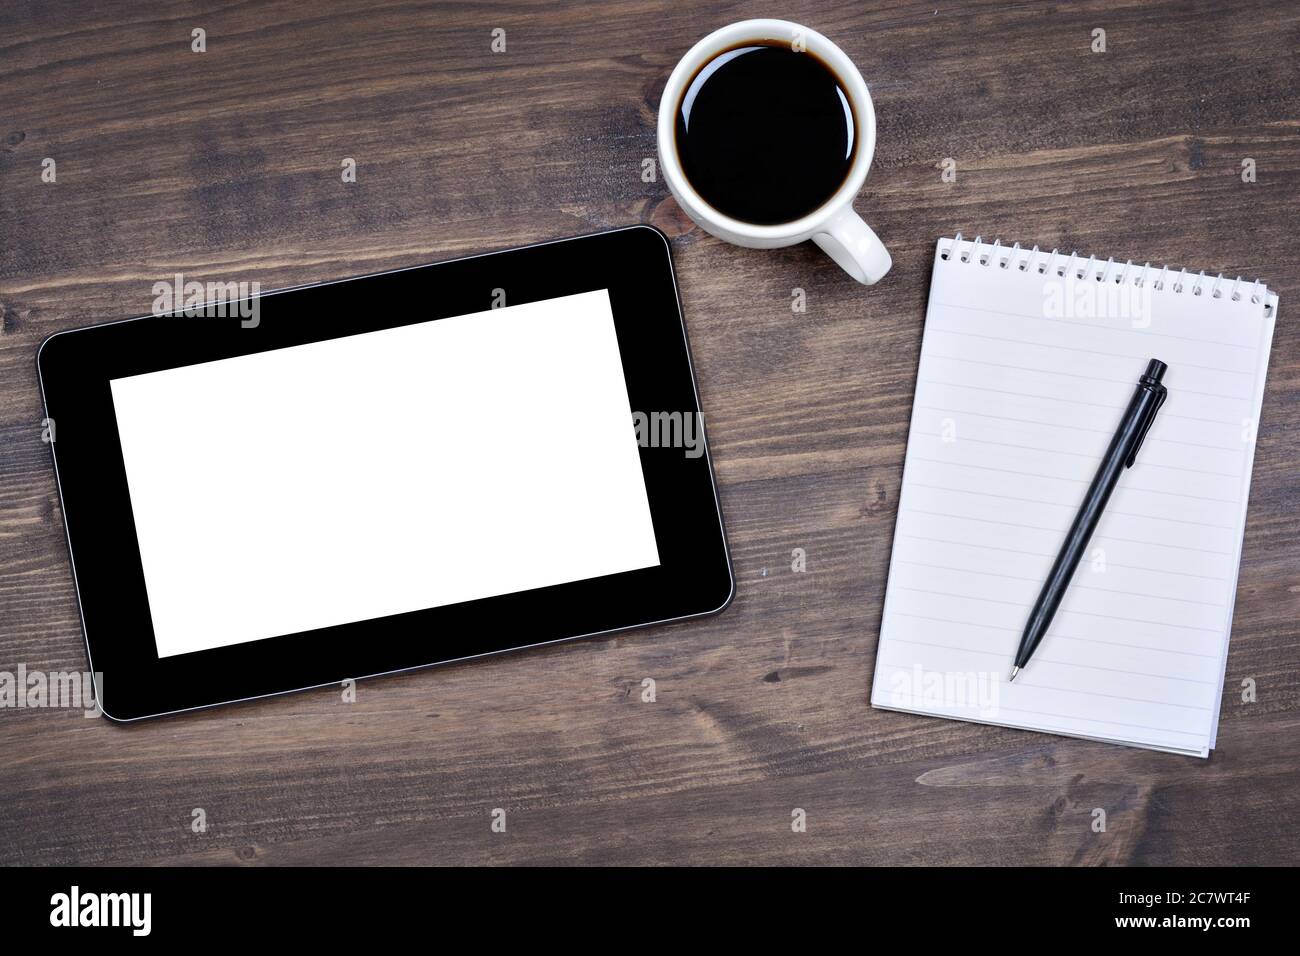 Appareil à écran tactile, bloc-notes, stylo et tasse de café sur table en bois Banque D'Images